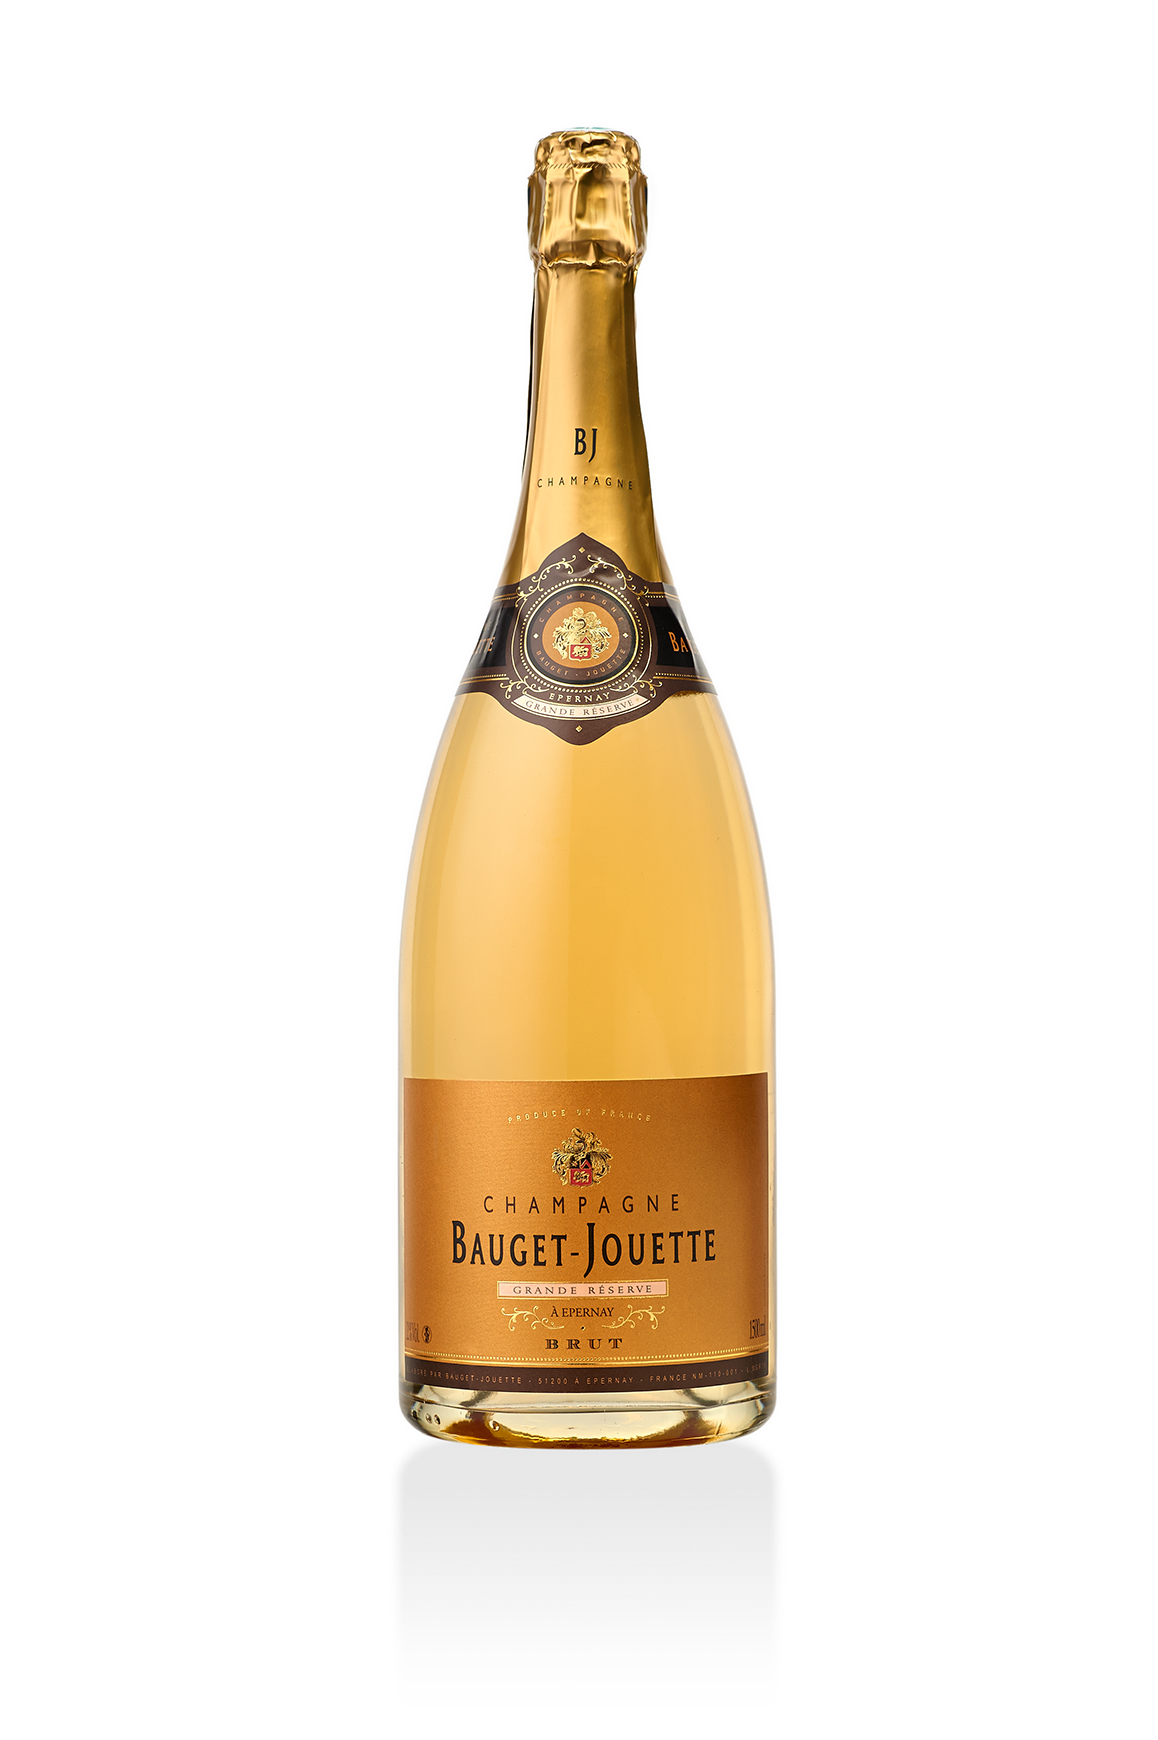 Grande Réserve Champagne Bauget-Jouette